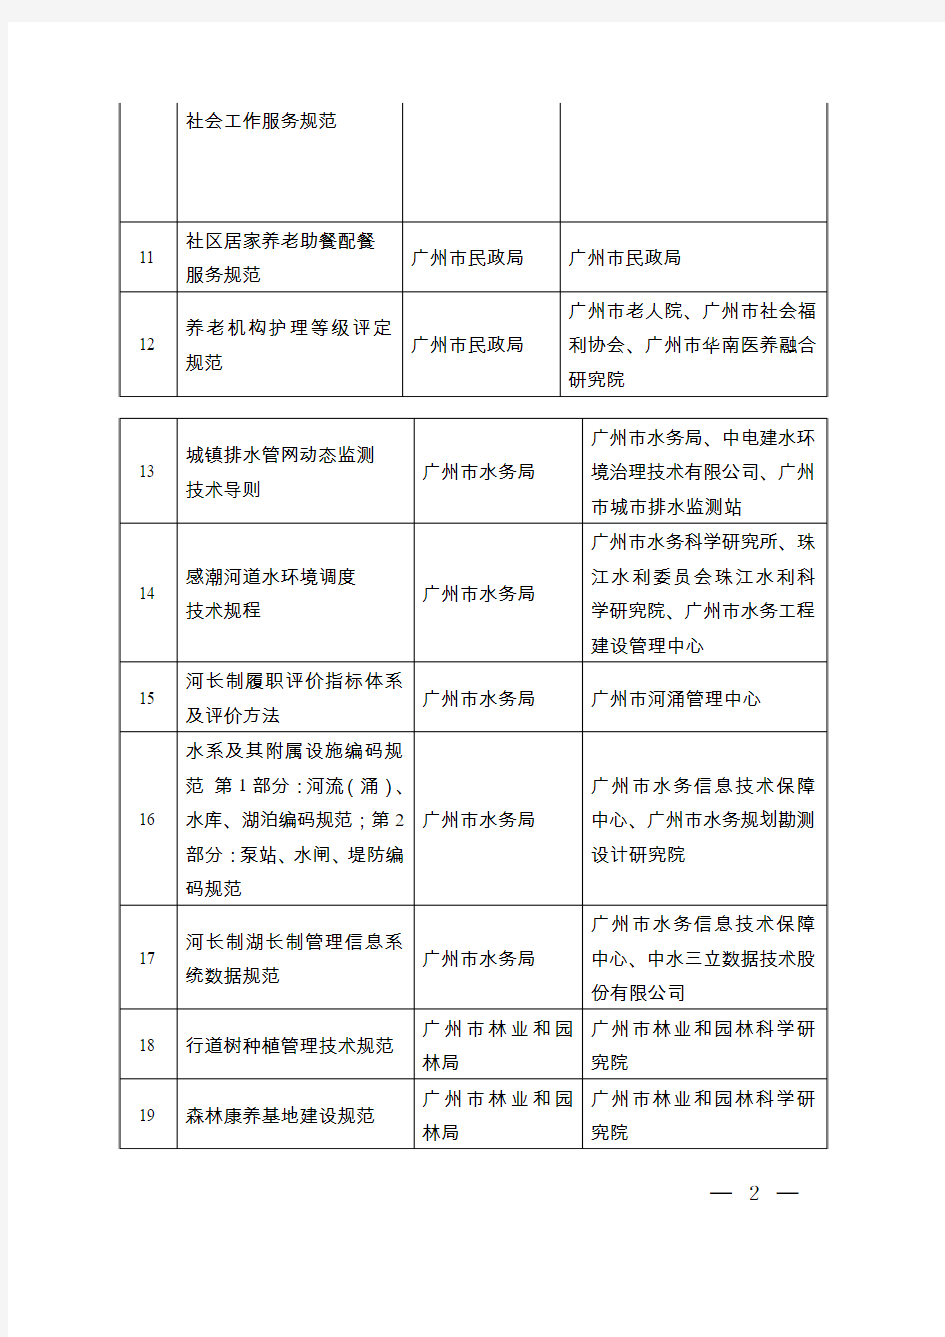 2018年广州公共服务类地方标准制修订计划项目